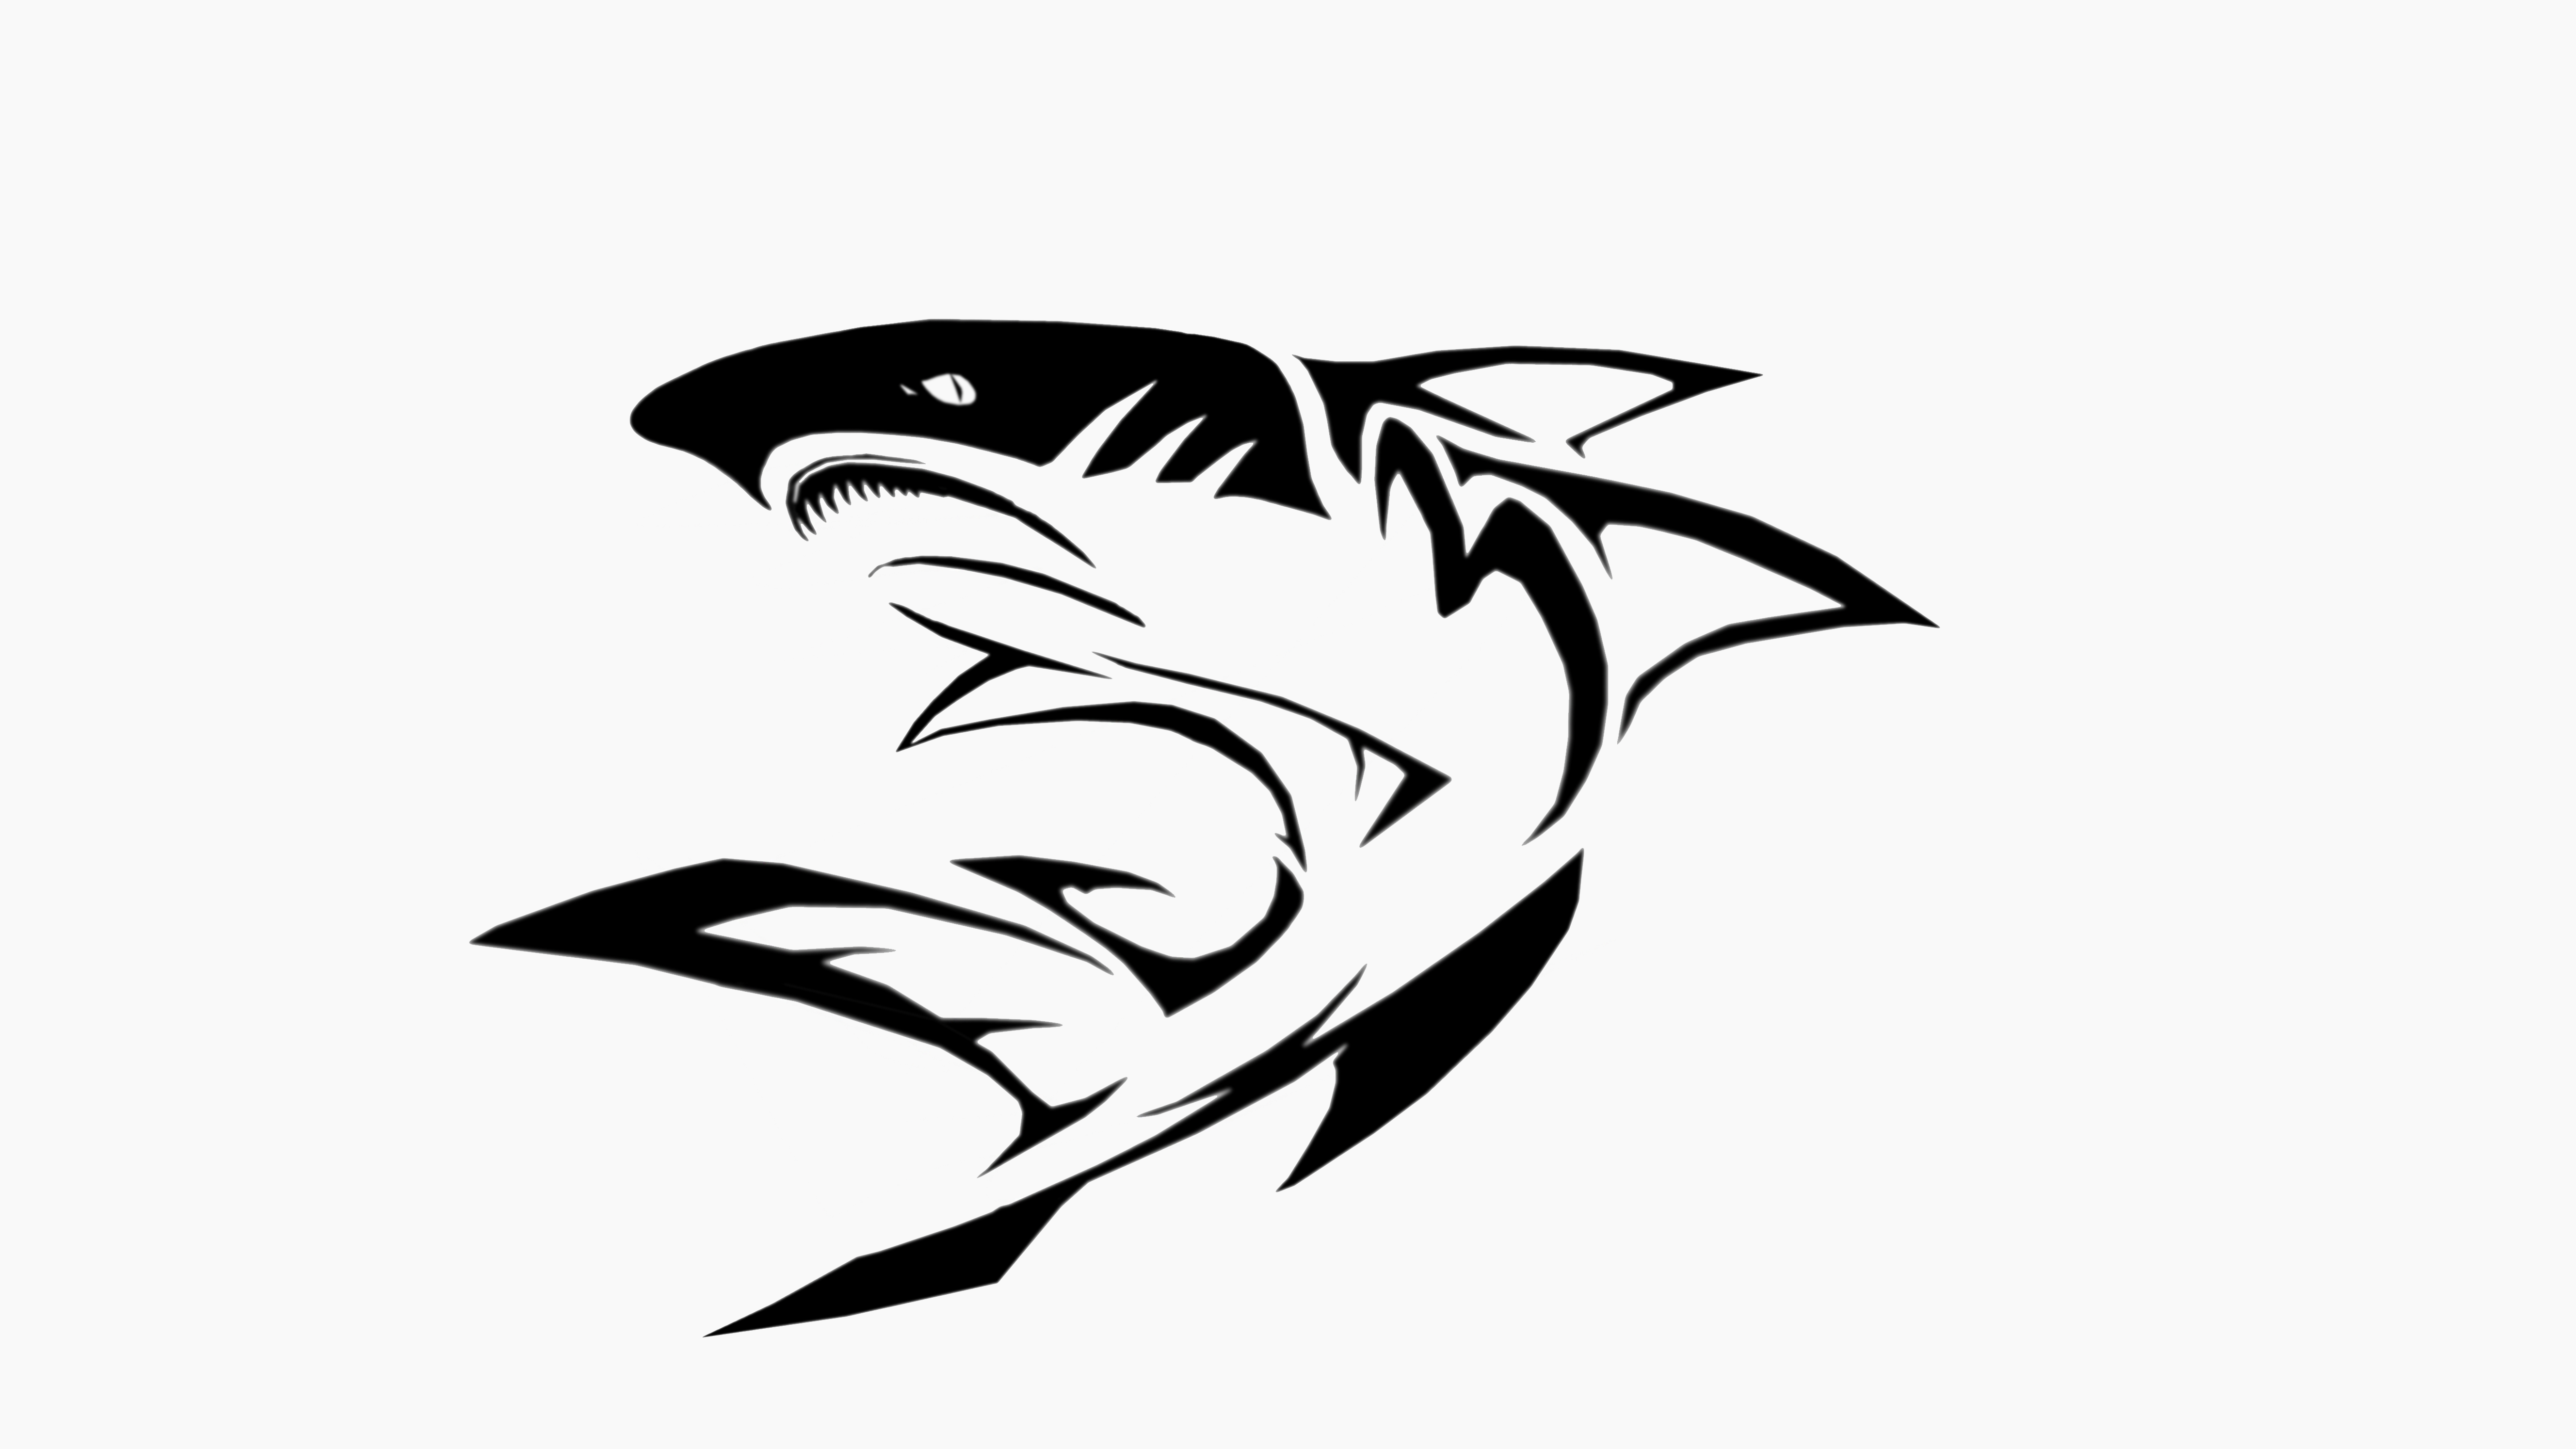 深海狂鲨(the fury shark)